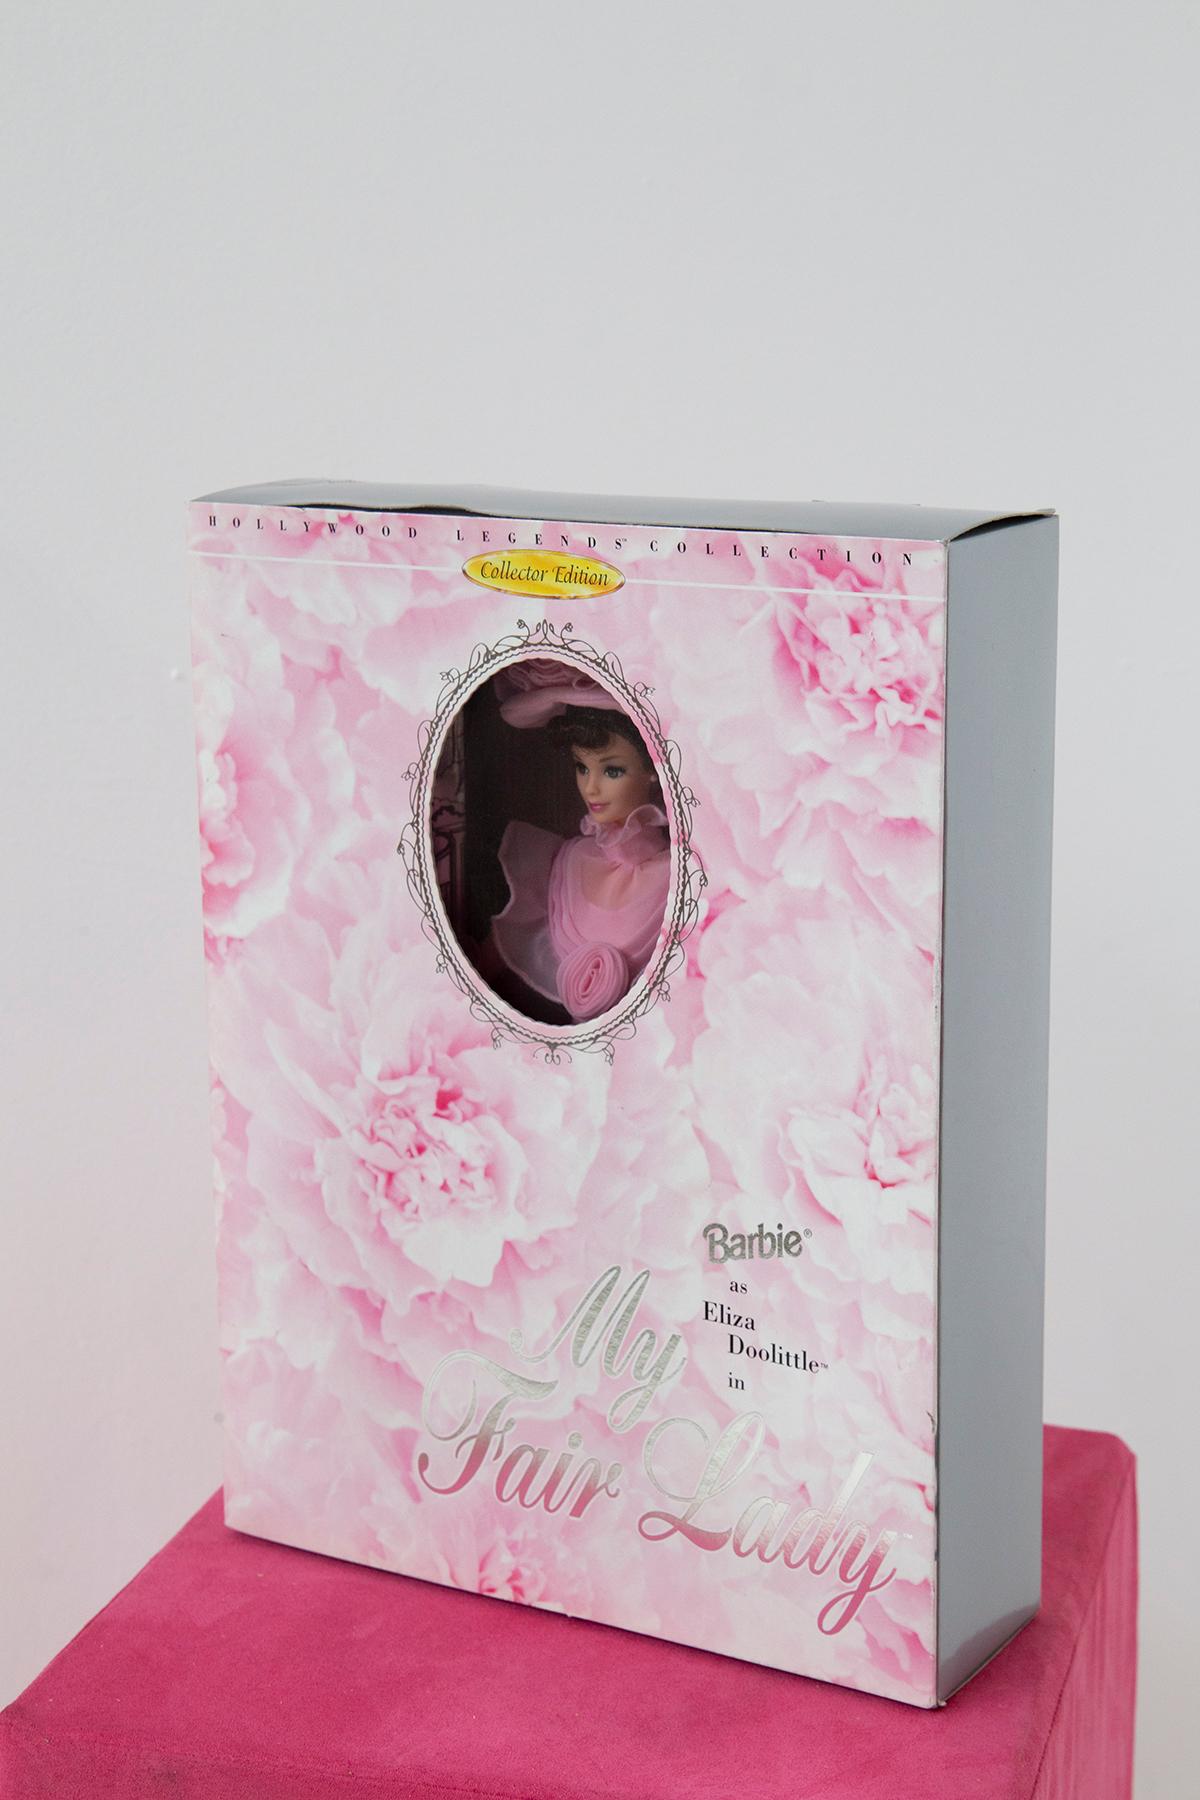 Hollywood Legends Collection Barbie als Eliza Doolittle in My Fair Lady. Das ist Barbie als Eliza in ihrem rosa Kleid, nachdem sie eine Dame geworden ist und Henry Higgins' Mutter besucht. Wie neu in der Box. 
Limitierte Auflage Reproduktion der